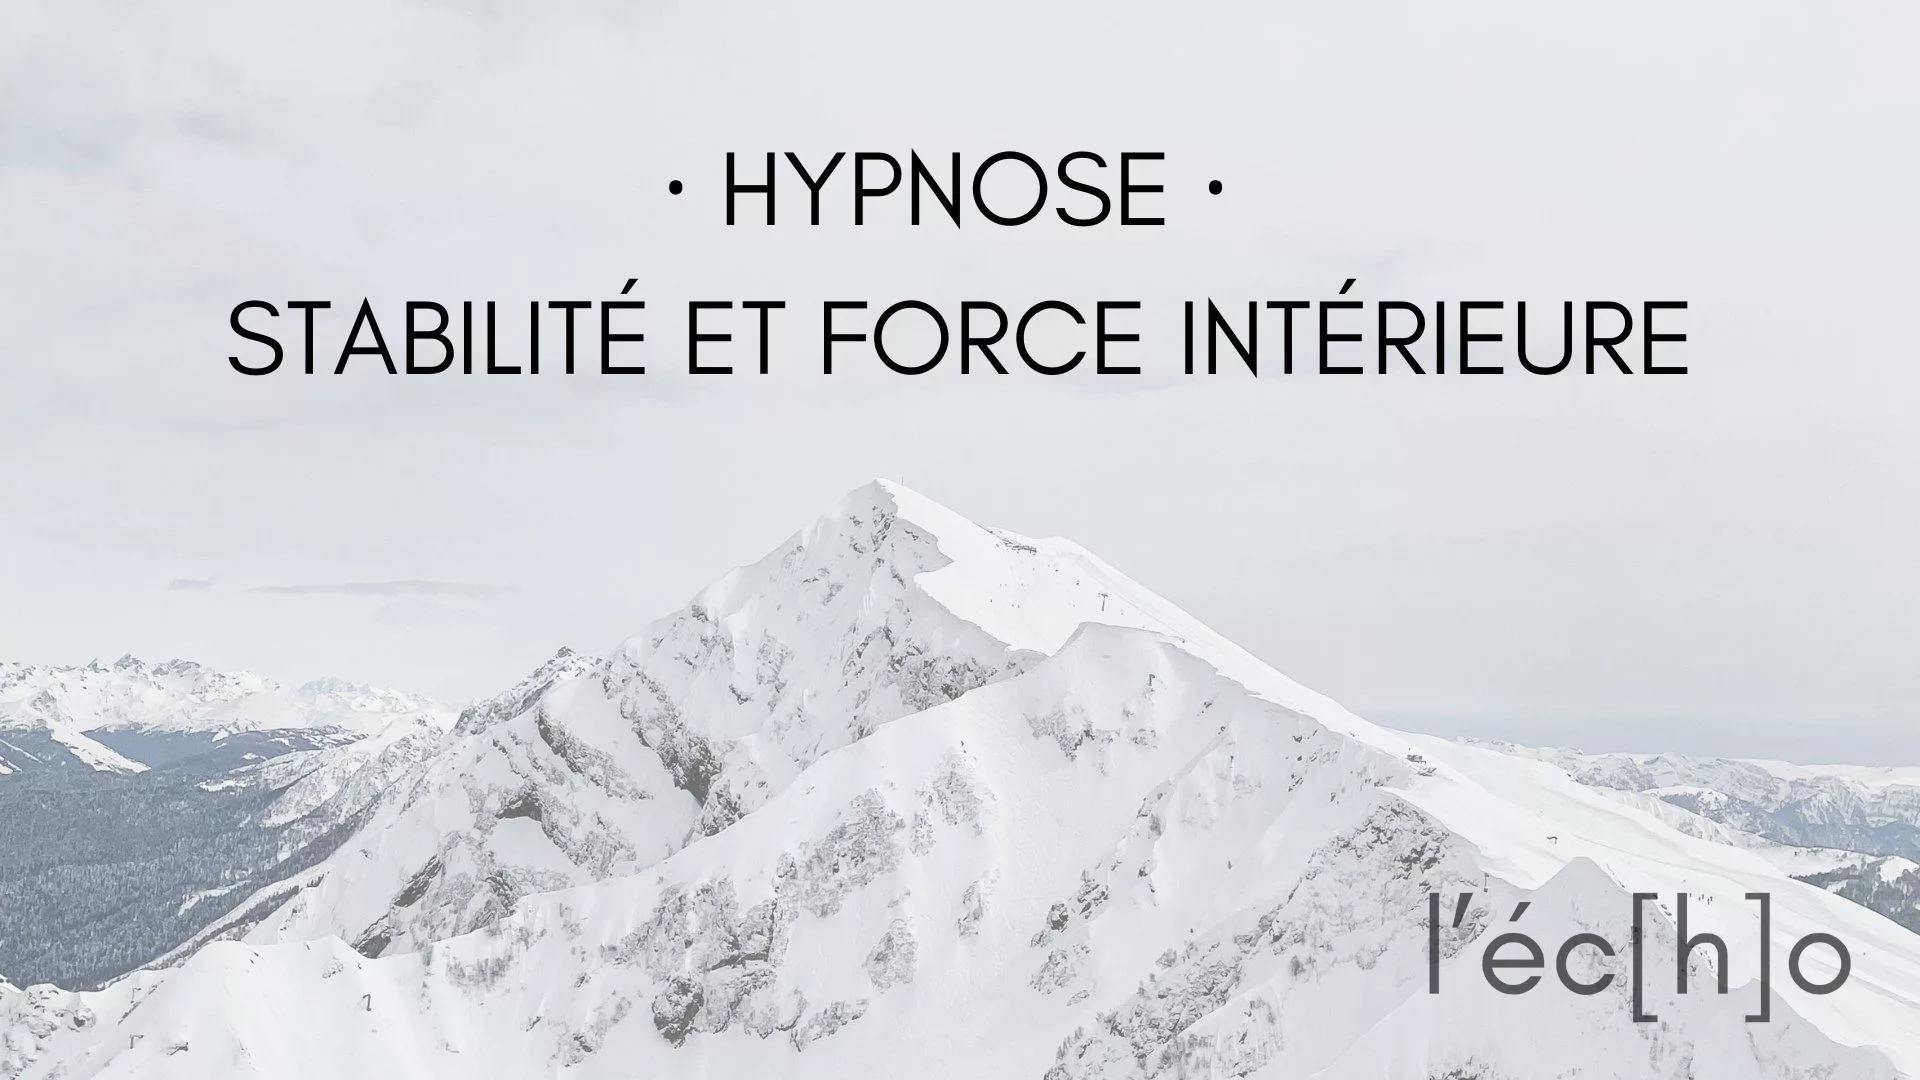 Hypnose - Stabilité et force